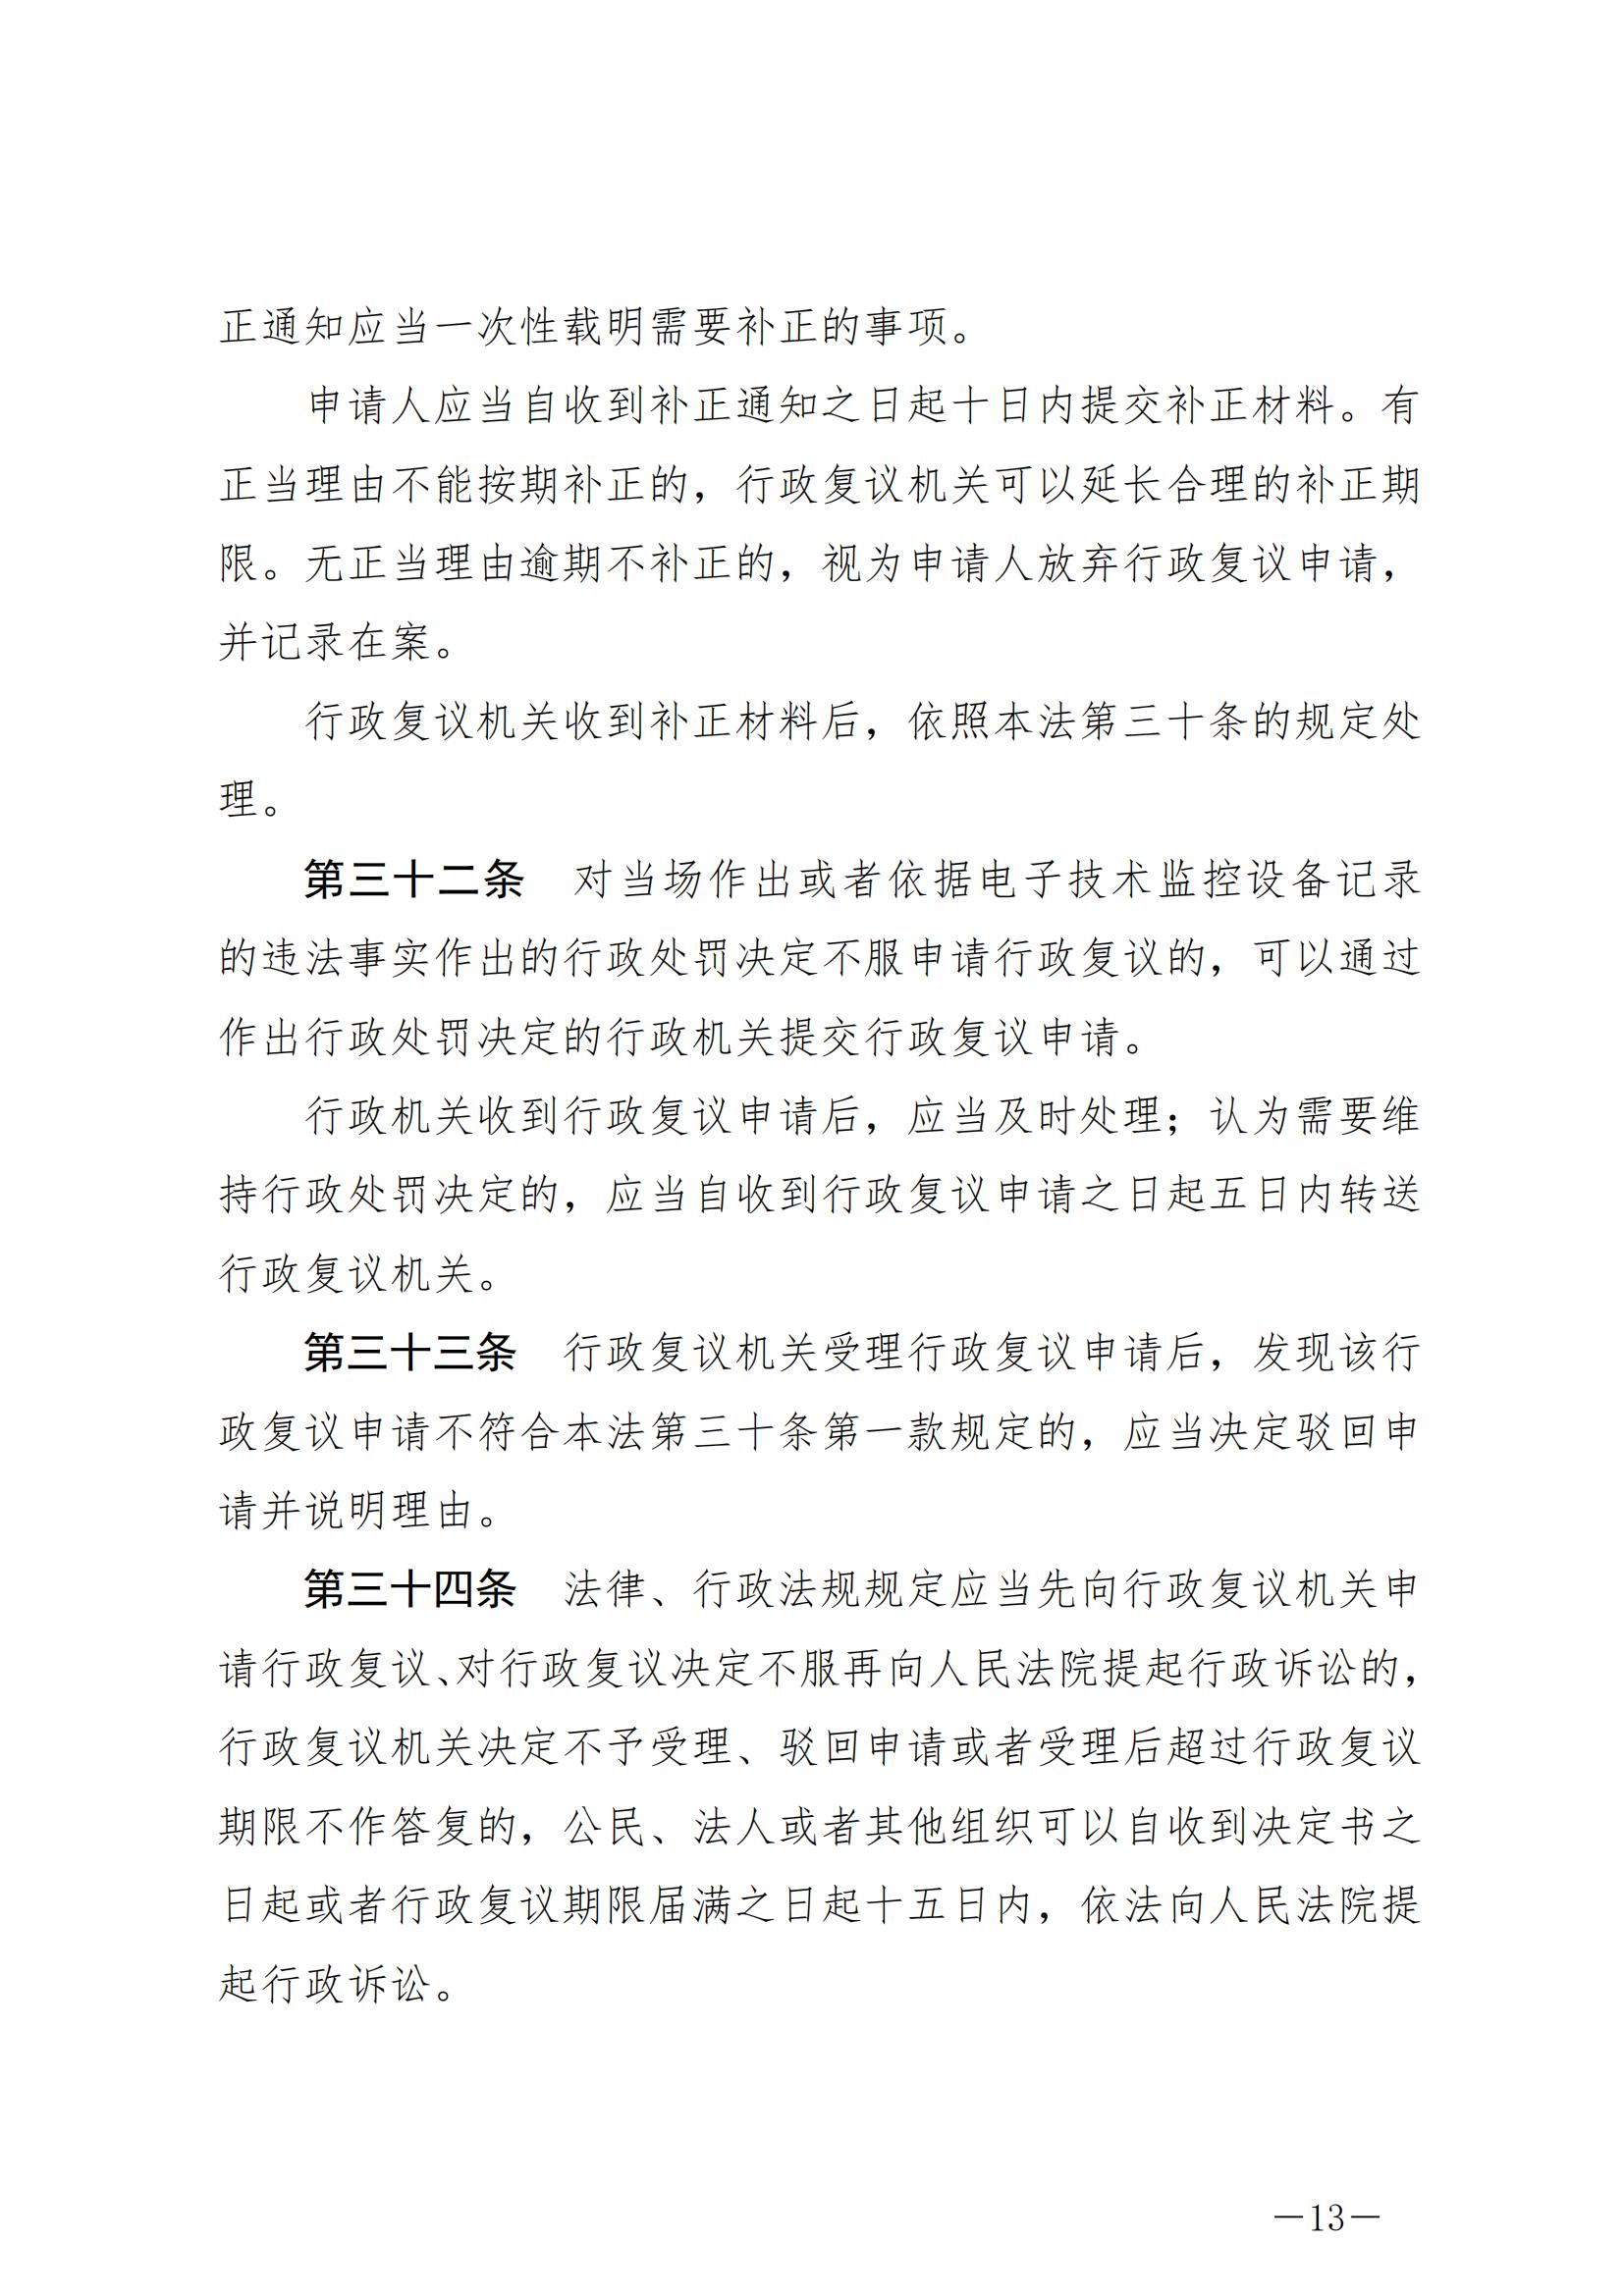 《中华人民共和国行政复议法》_20231204154310_12.jpg